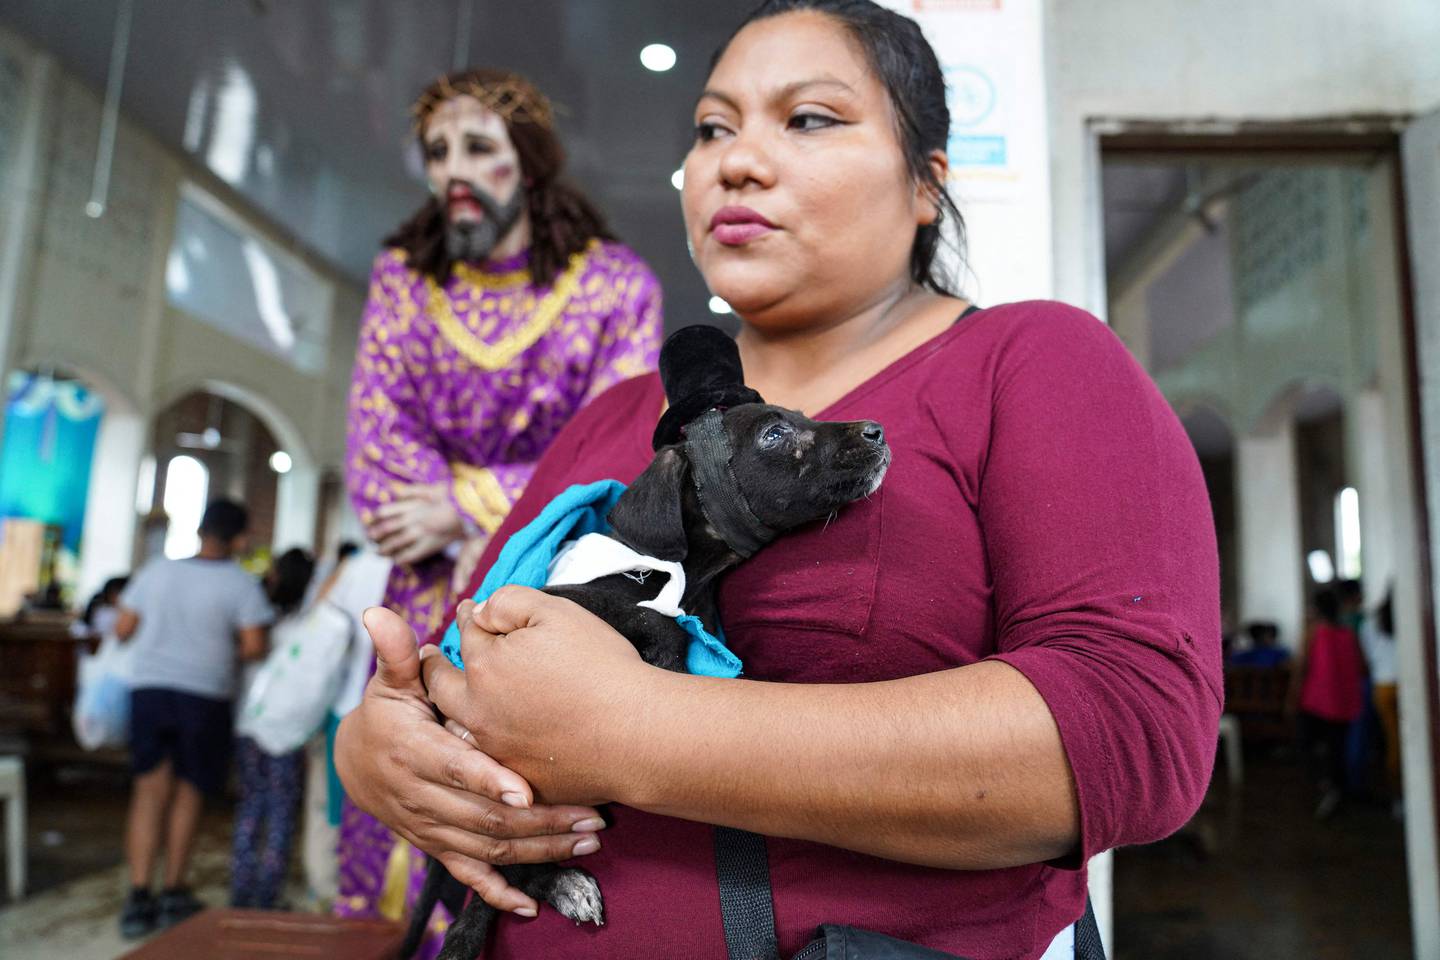 Cientos de perros vestidos como humanos fueron llevados por sus dueños este domingo a una iglesia de Nicaragua para agradecer favores a San Lázaro, en una tradición católica de hace más de un siglo.